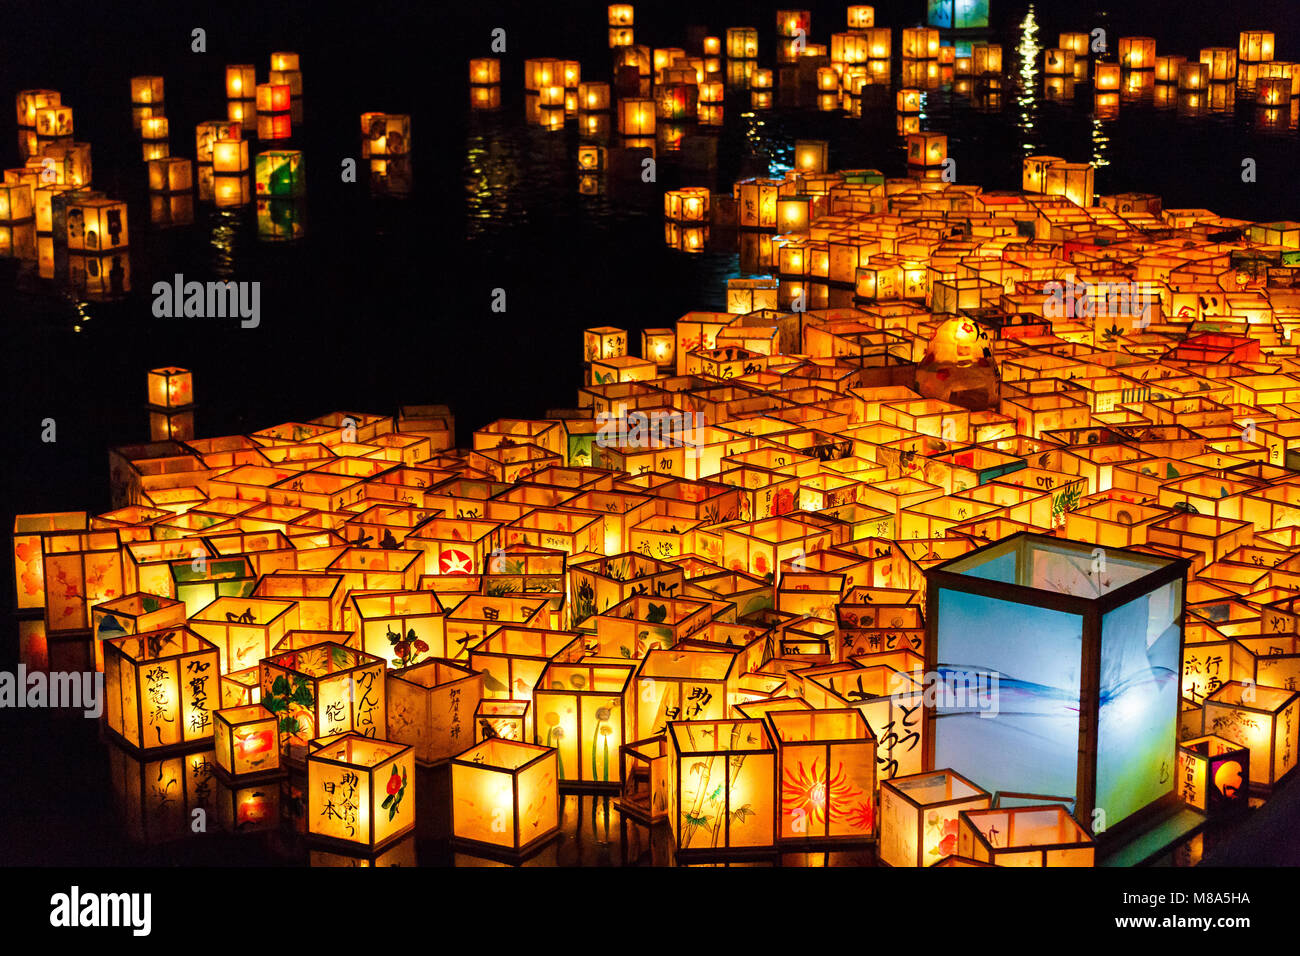 Lanternes flottantes en Festival Hyakumangoku, préfecture d'Ishikawa, Japon Banque D'Images